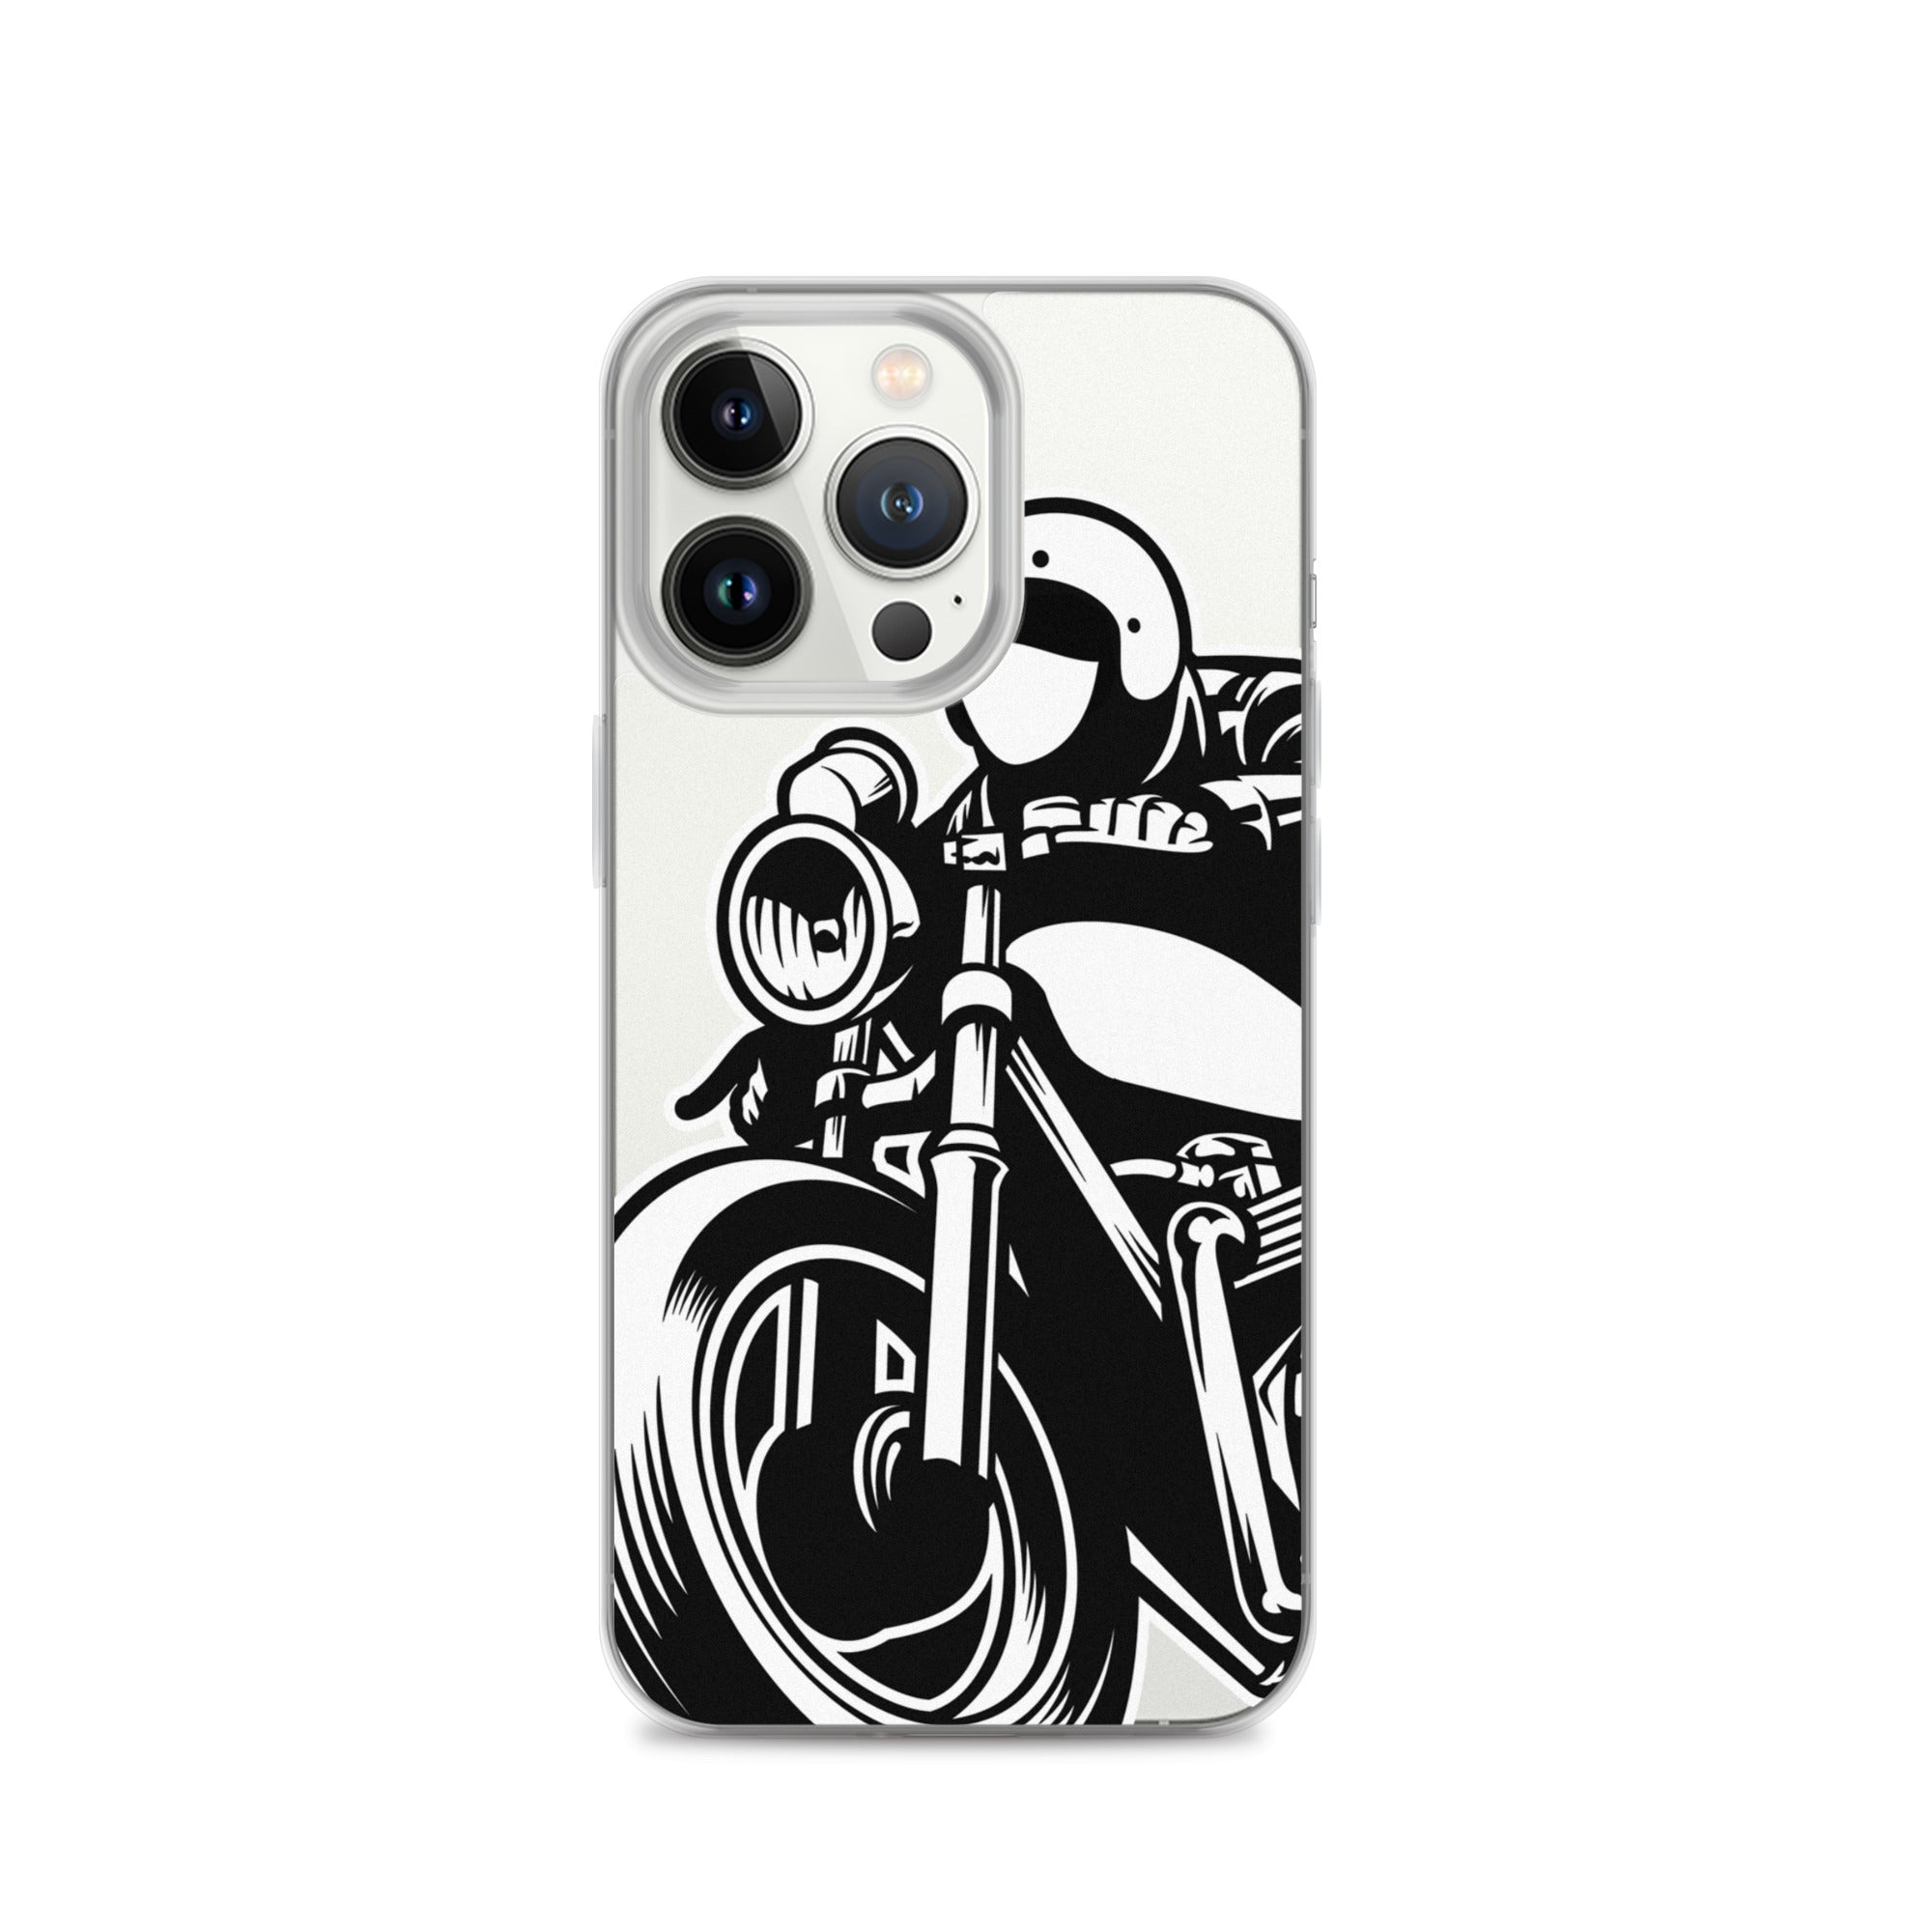 Rider iPhone Case